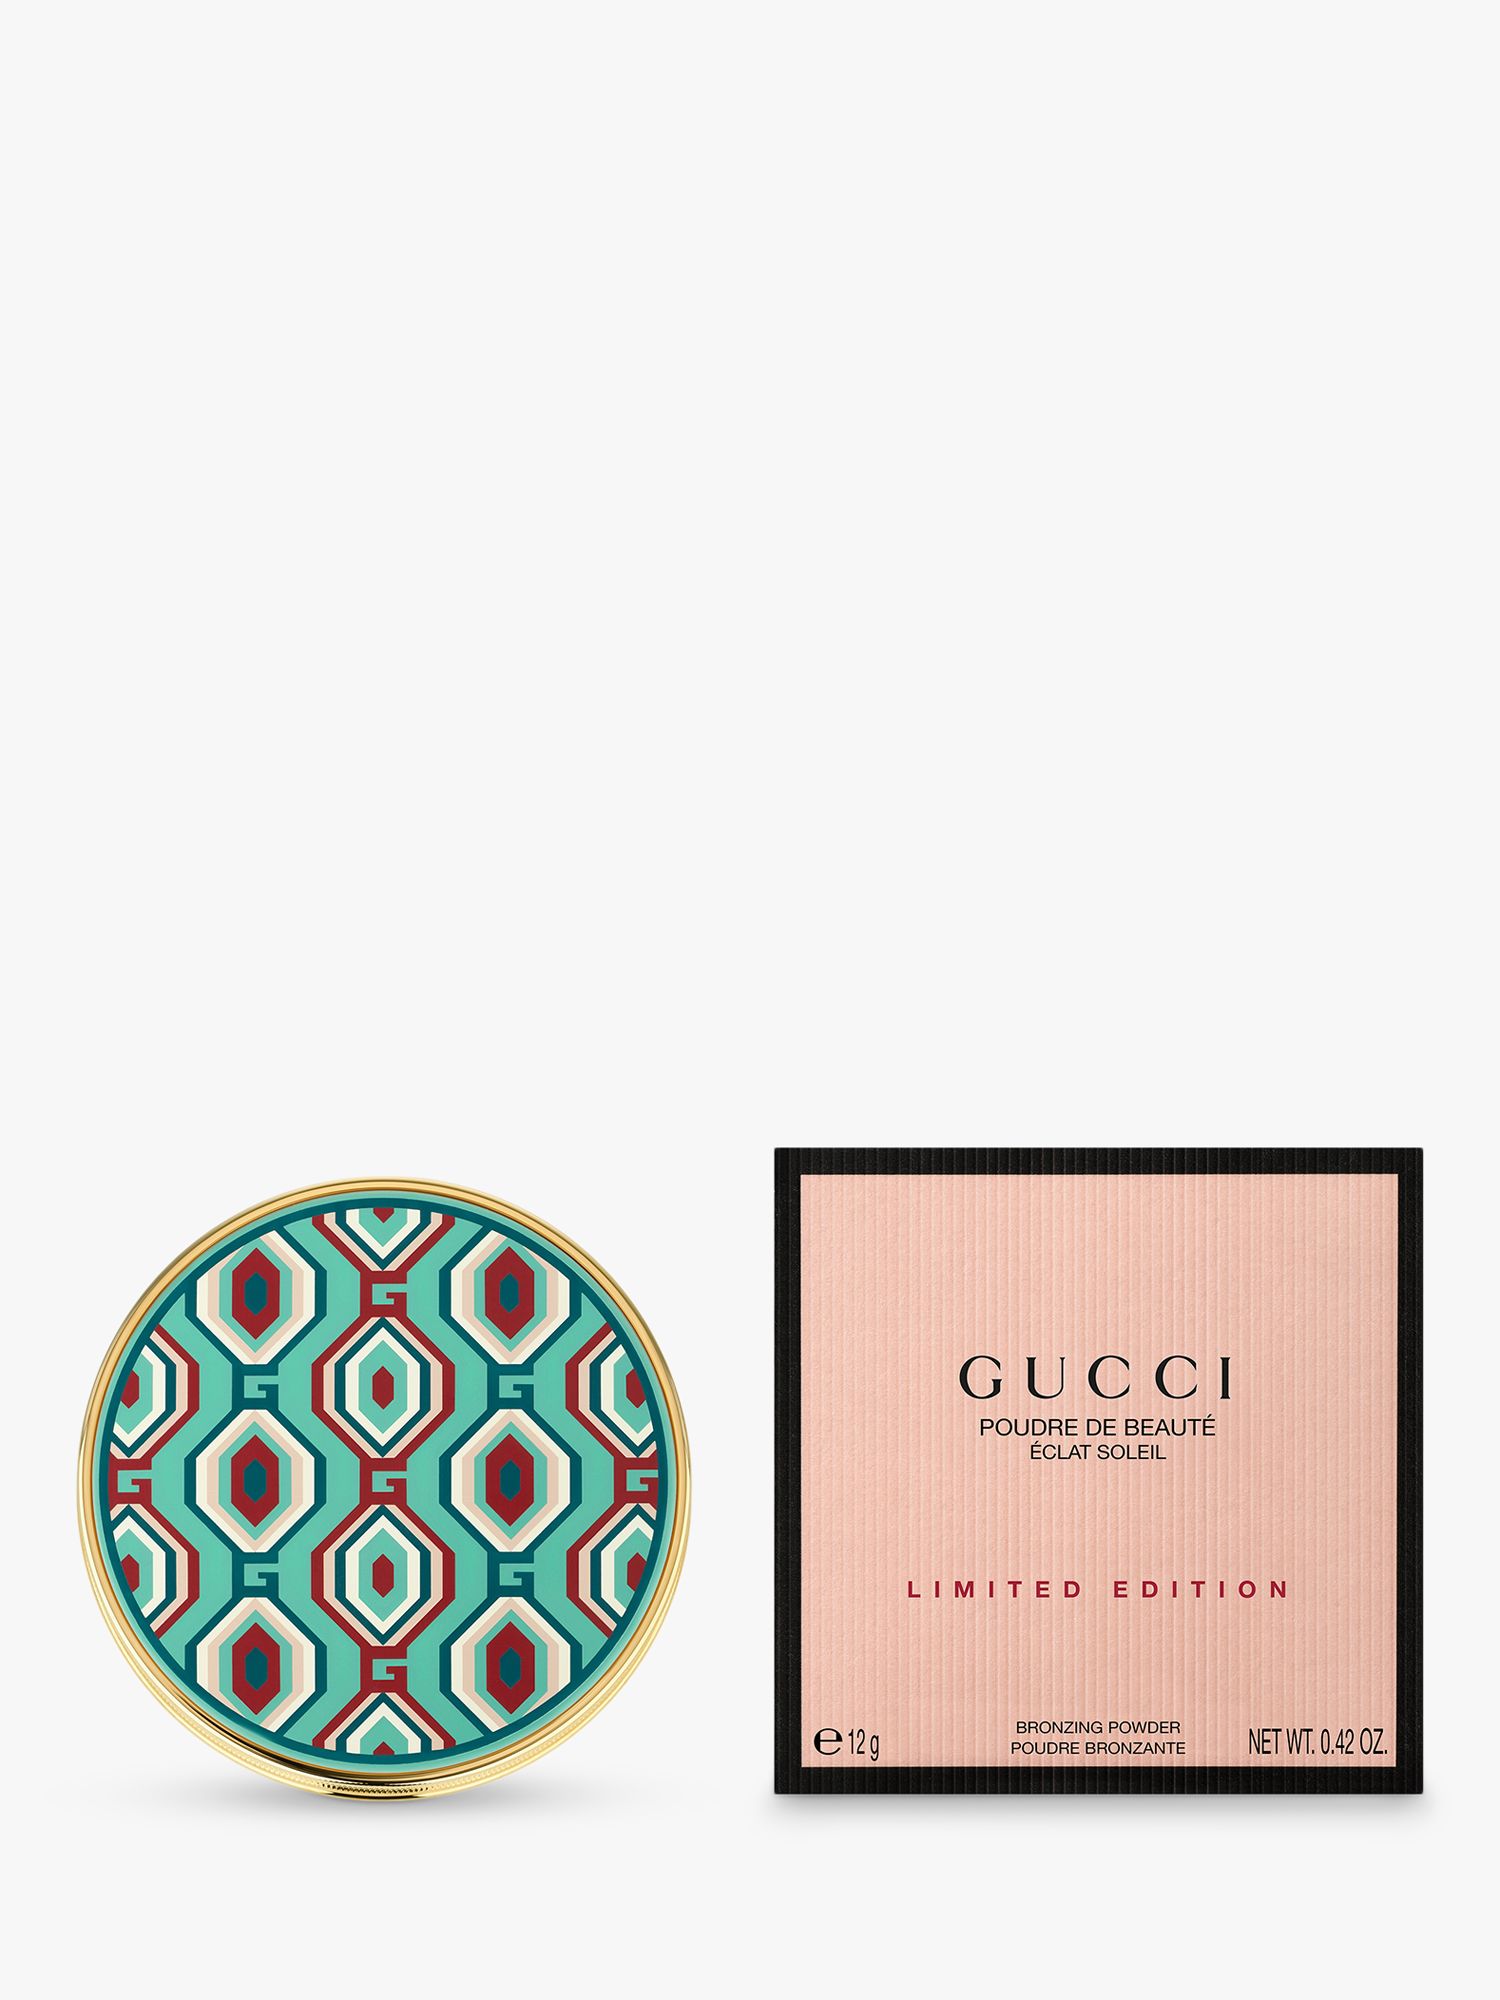 Gucci Poudre de Beauté Eclat Soleil Bronzing Powder Limited Edition, 01 2